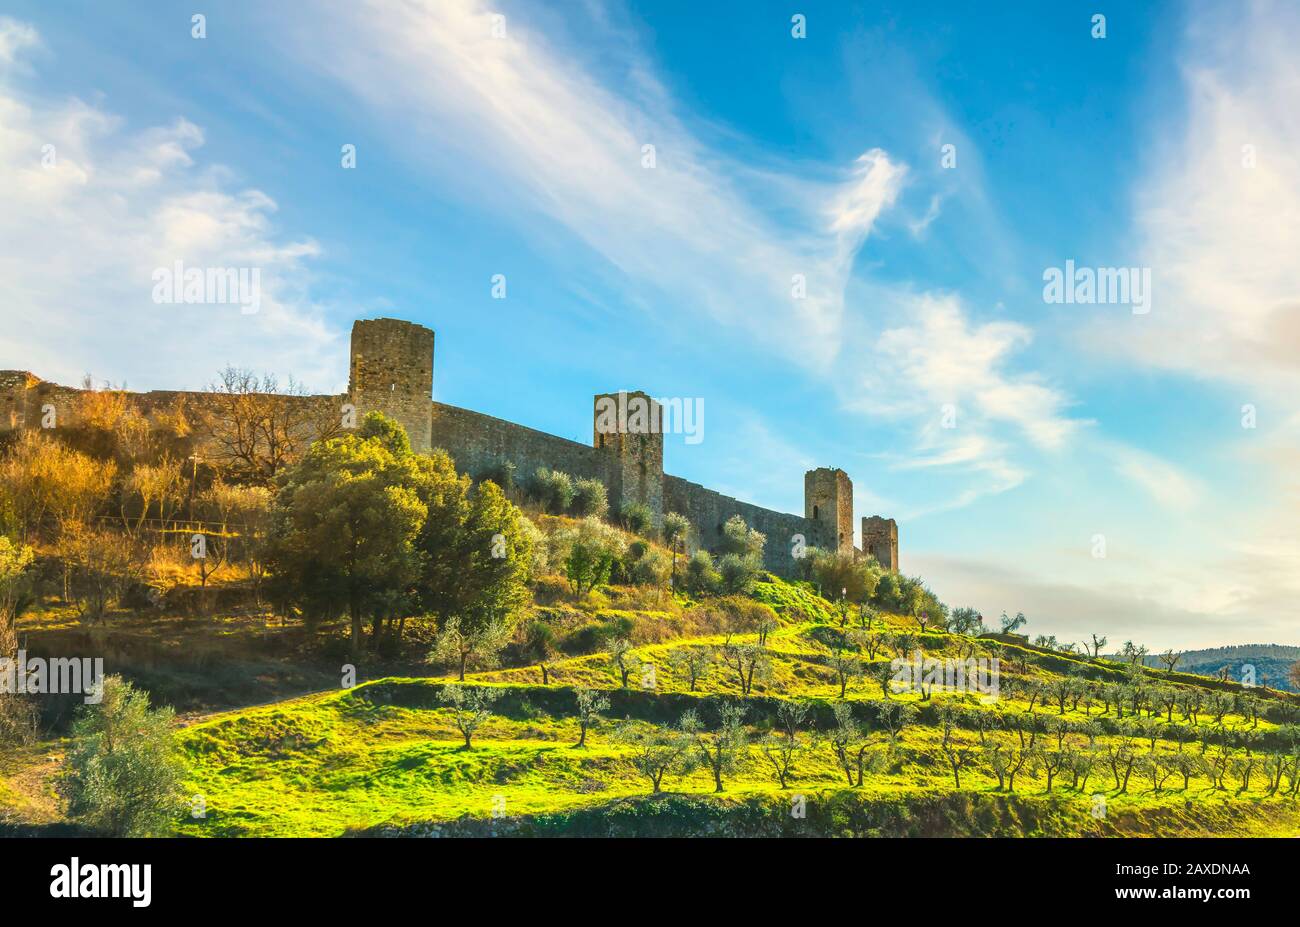 Monteriggioni village médiéval fortifié et oliviers, route de la via francigena, Sienne, Toscane. Italie Europe. Banque D'Images